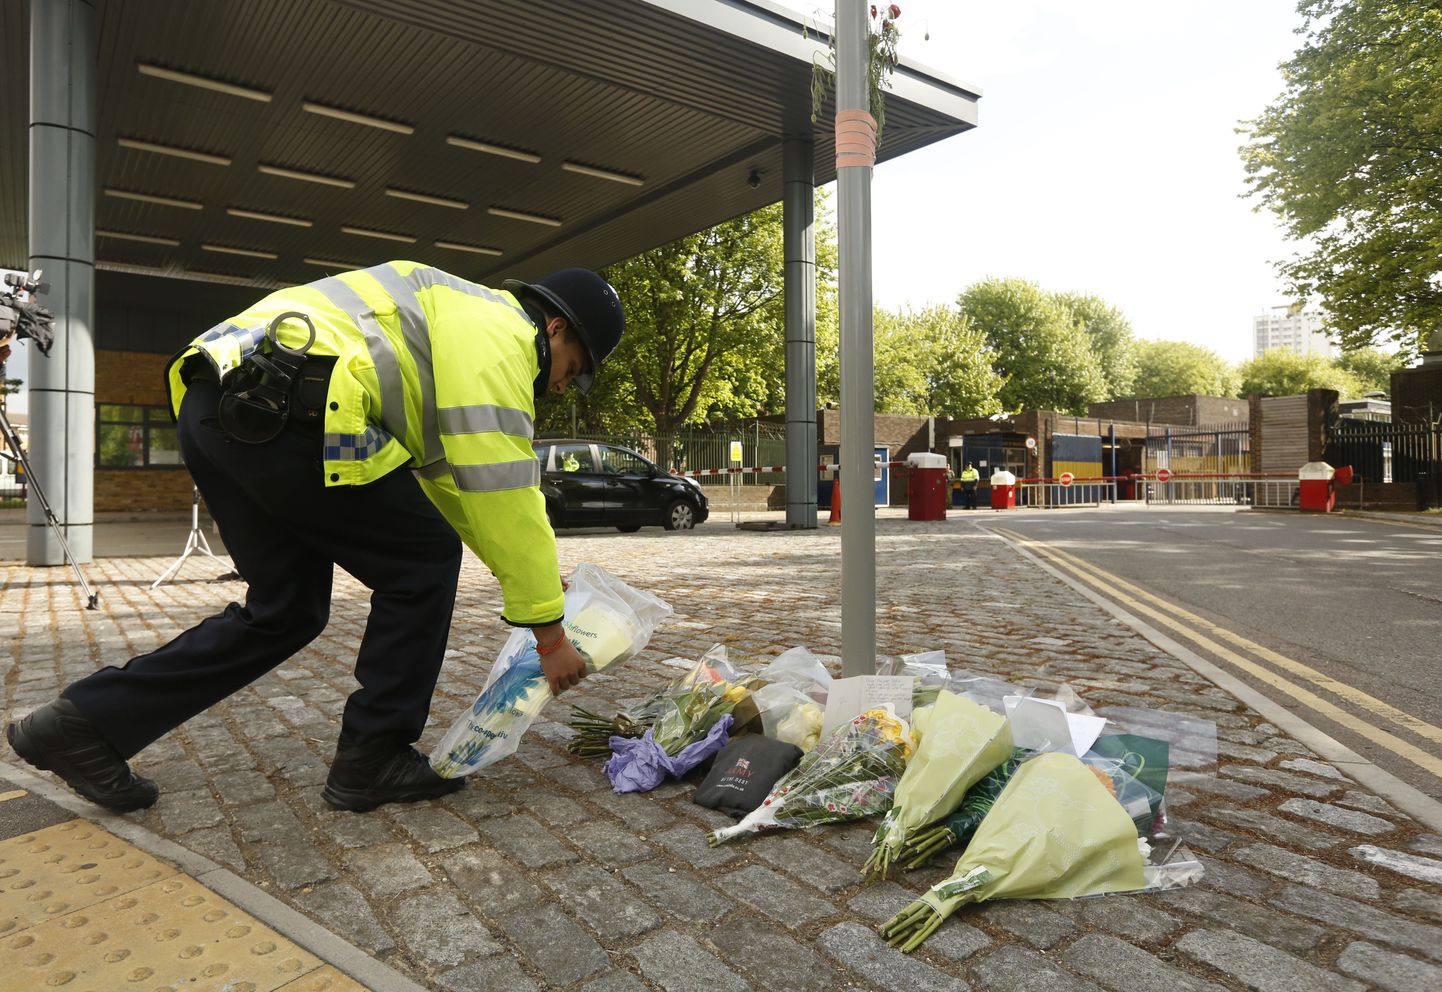 На юго-востоке Лондона в районе Вулич подвергся нападению человек. Его ударили ножом 300 метрах от того места, где воскресенье собрались люди почтить память убитого в минувшую среду британского военнослужащего Ли Ригби.